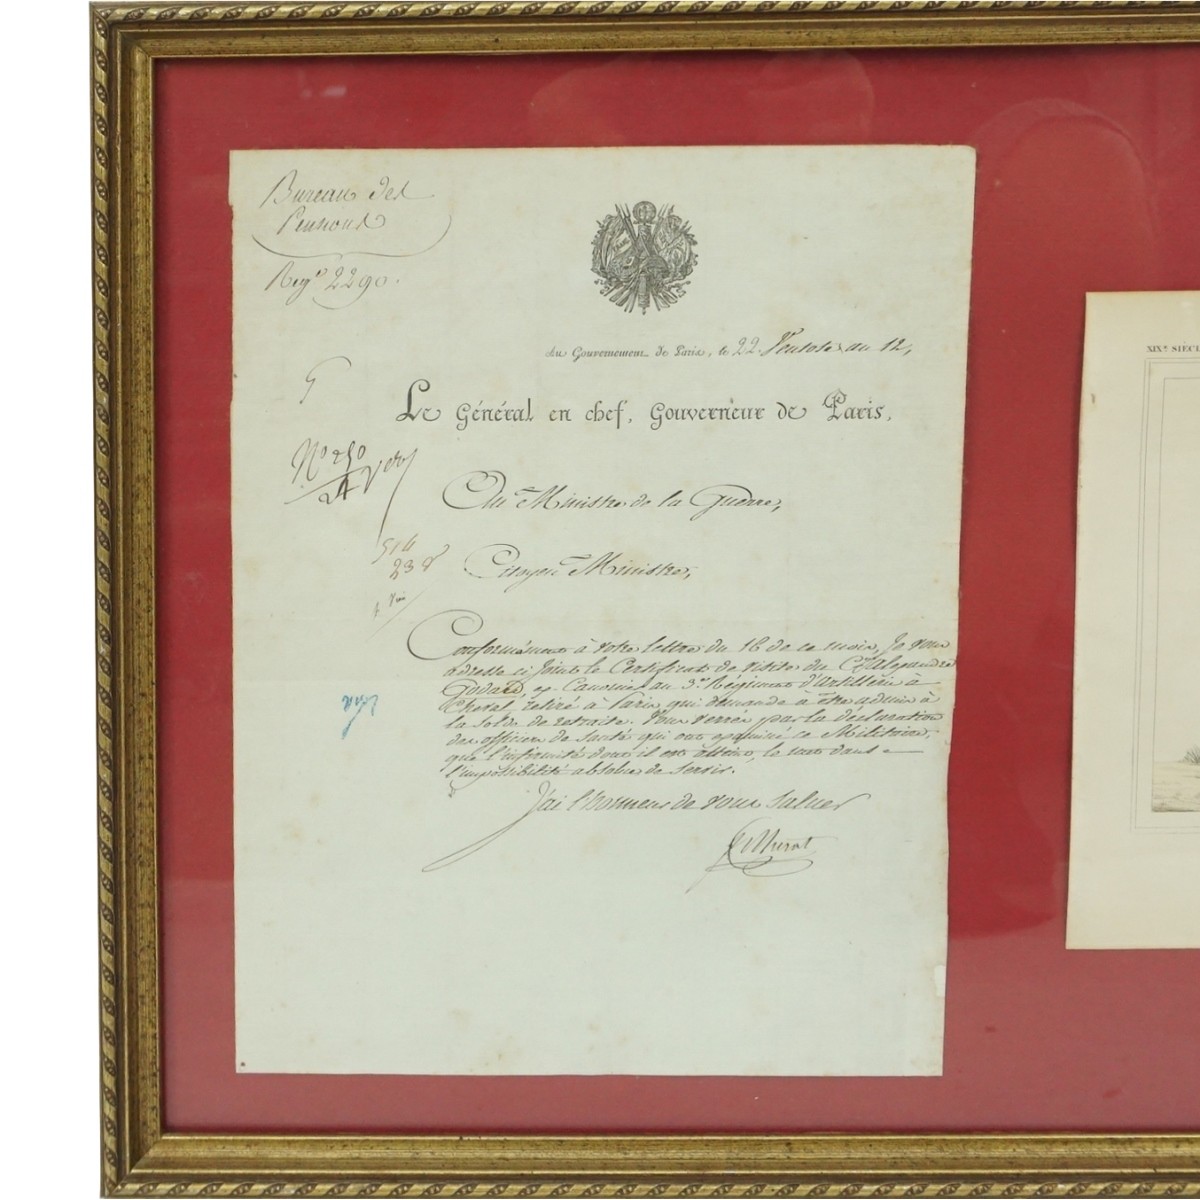 Napoleonic Letter from Murat